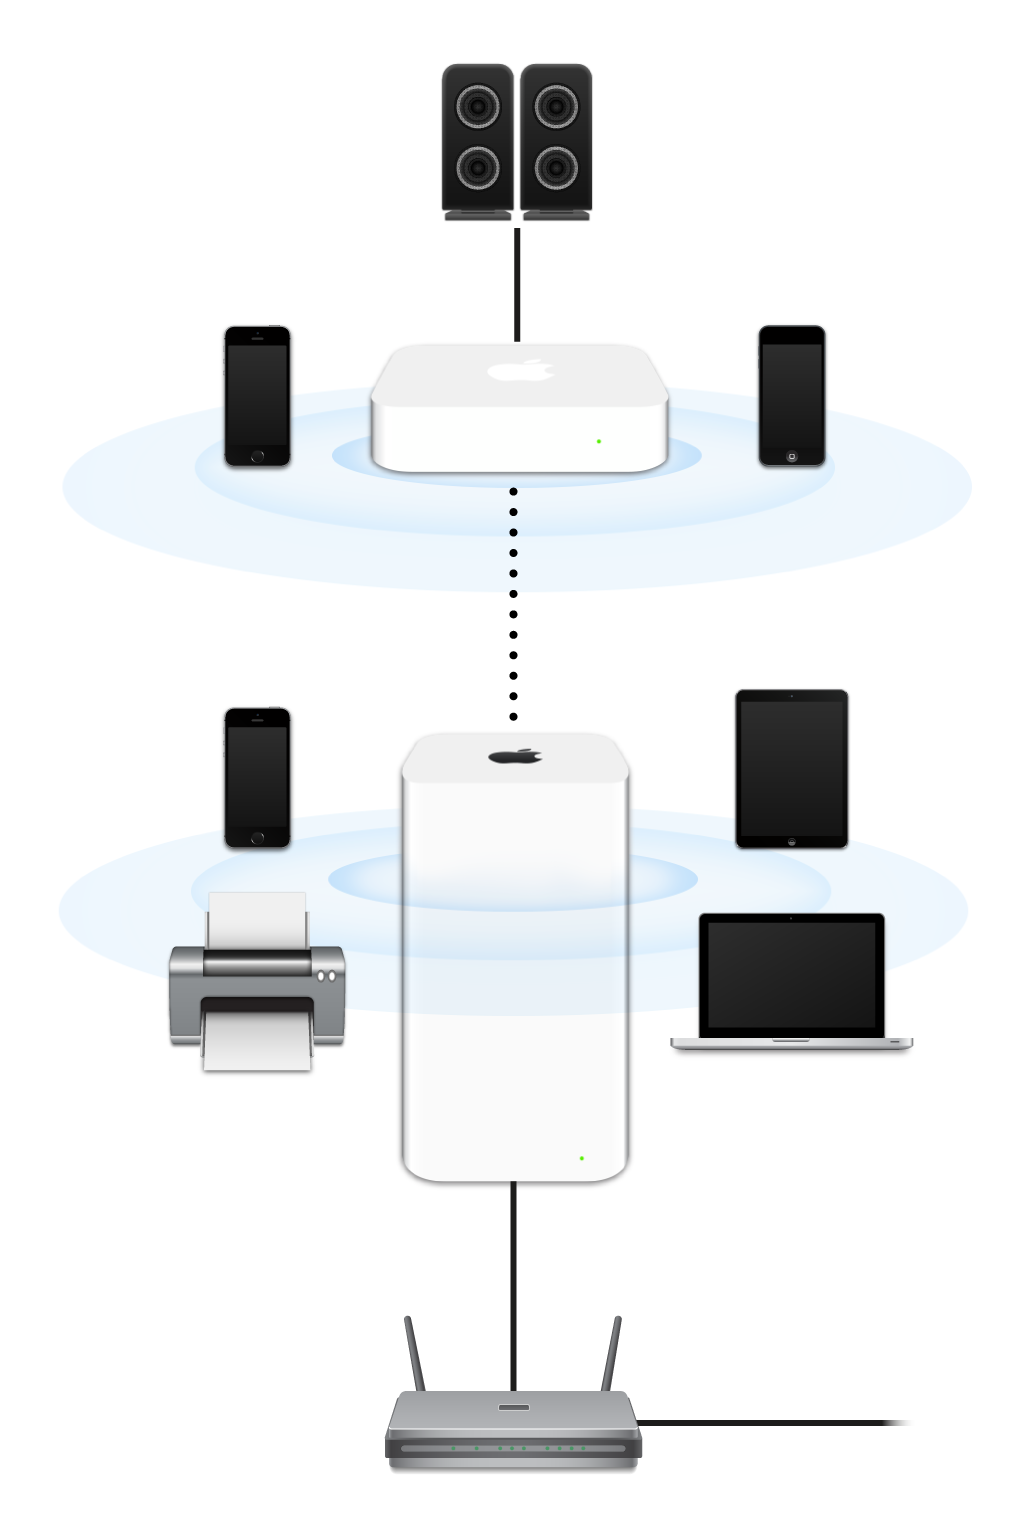 已扩展的网络，包括连接到调制解调器的 AirPort Extreme 和 AirPort Express 并传输到不同设备。